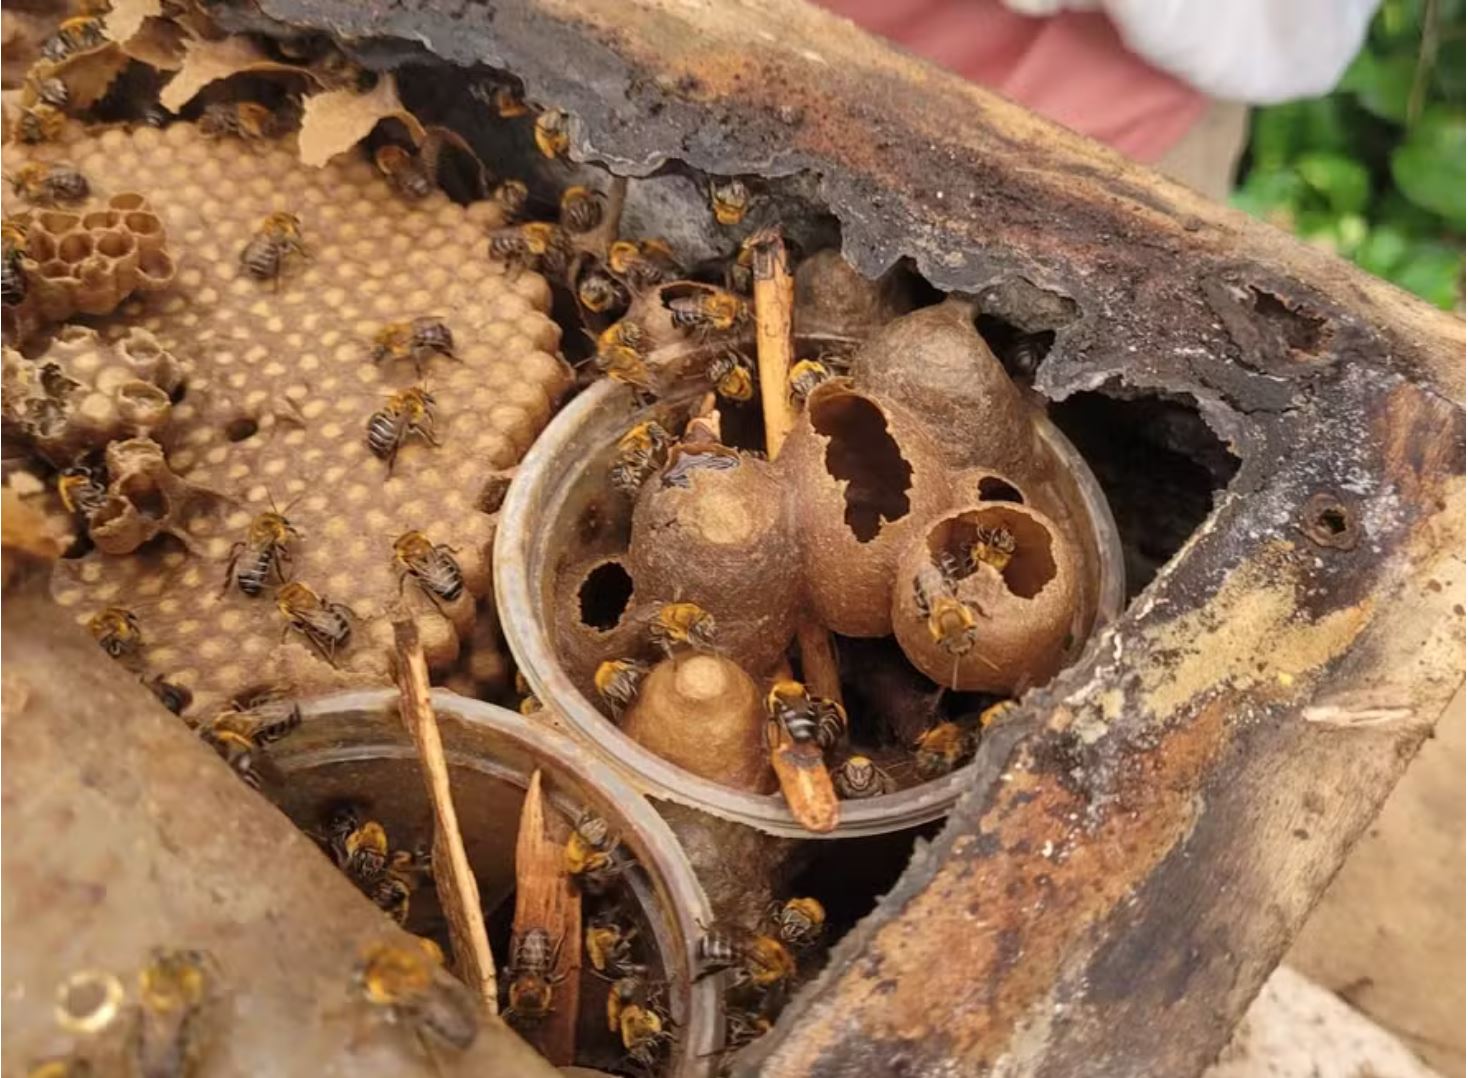 Como o uso de agrotóxicos afeta as abelhas? Entenda